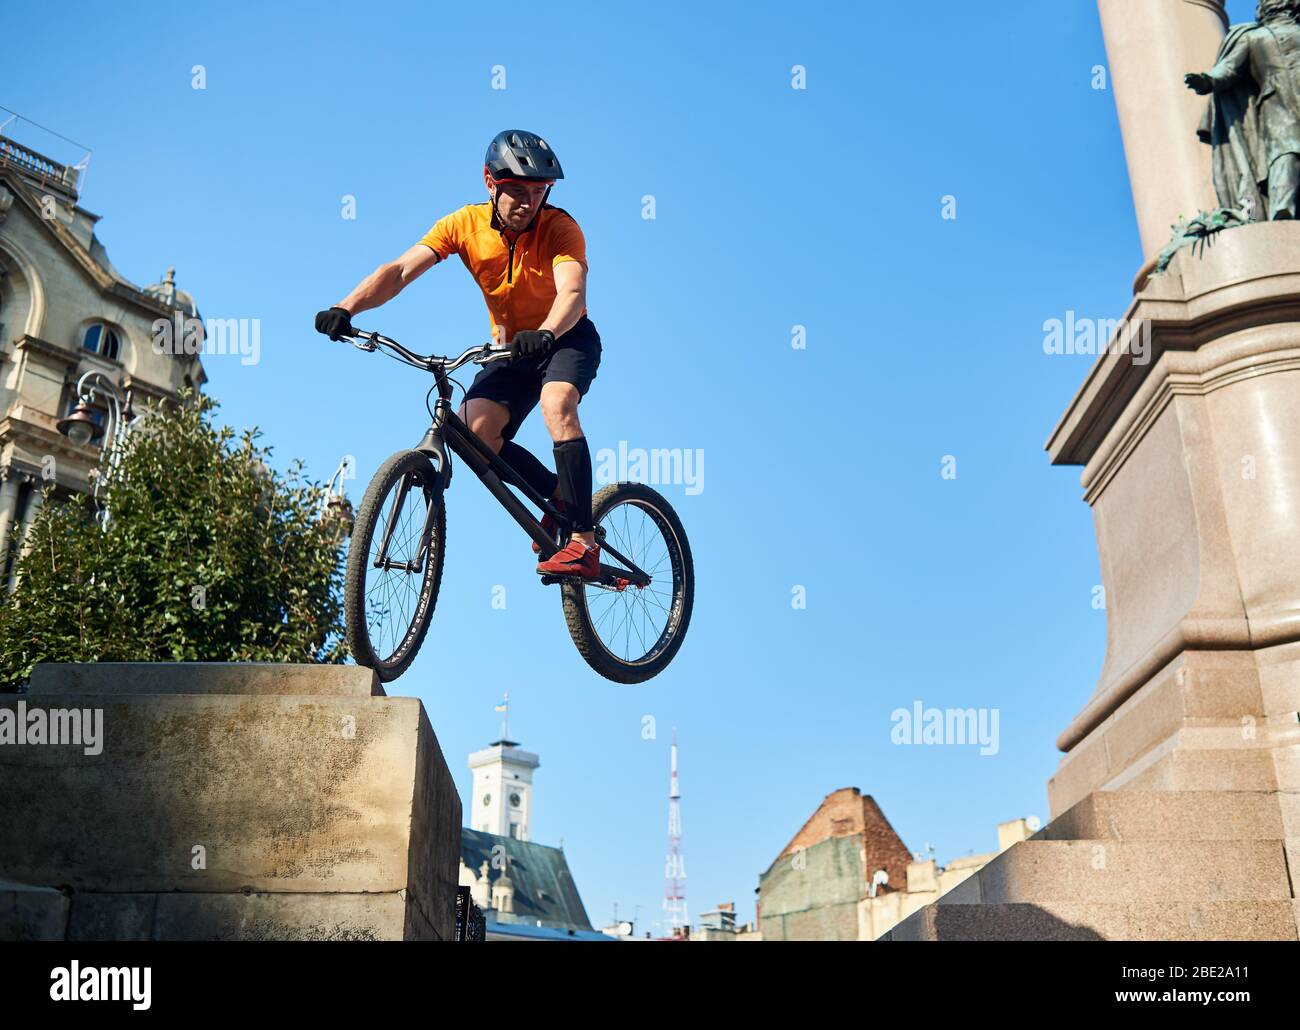 Junge Radfahrer Durchführung gefährlicher Sprünge auf dem Mountainbike auf der Treppe des Denkmals Sockel über blauen Himmel, Konzept des Extremsports Stockfoto